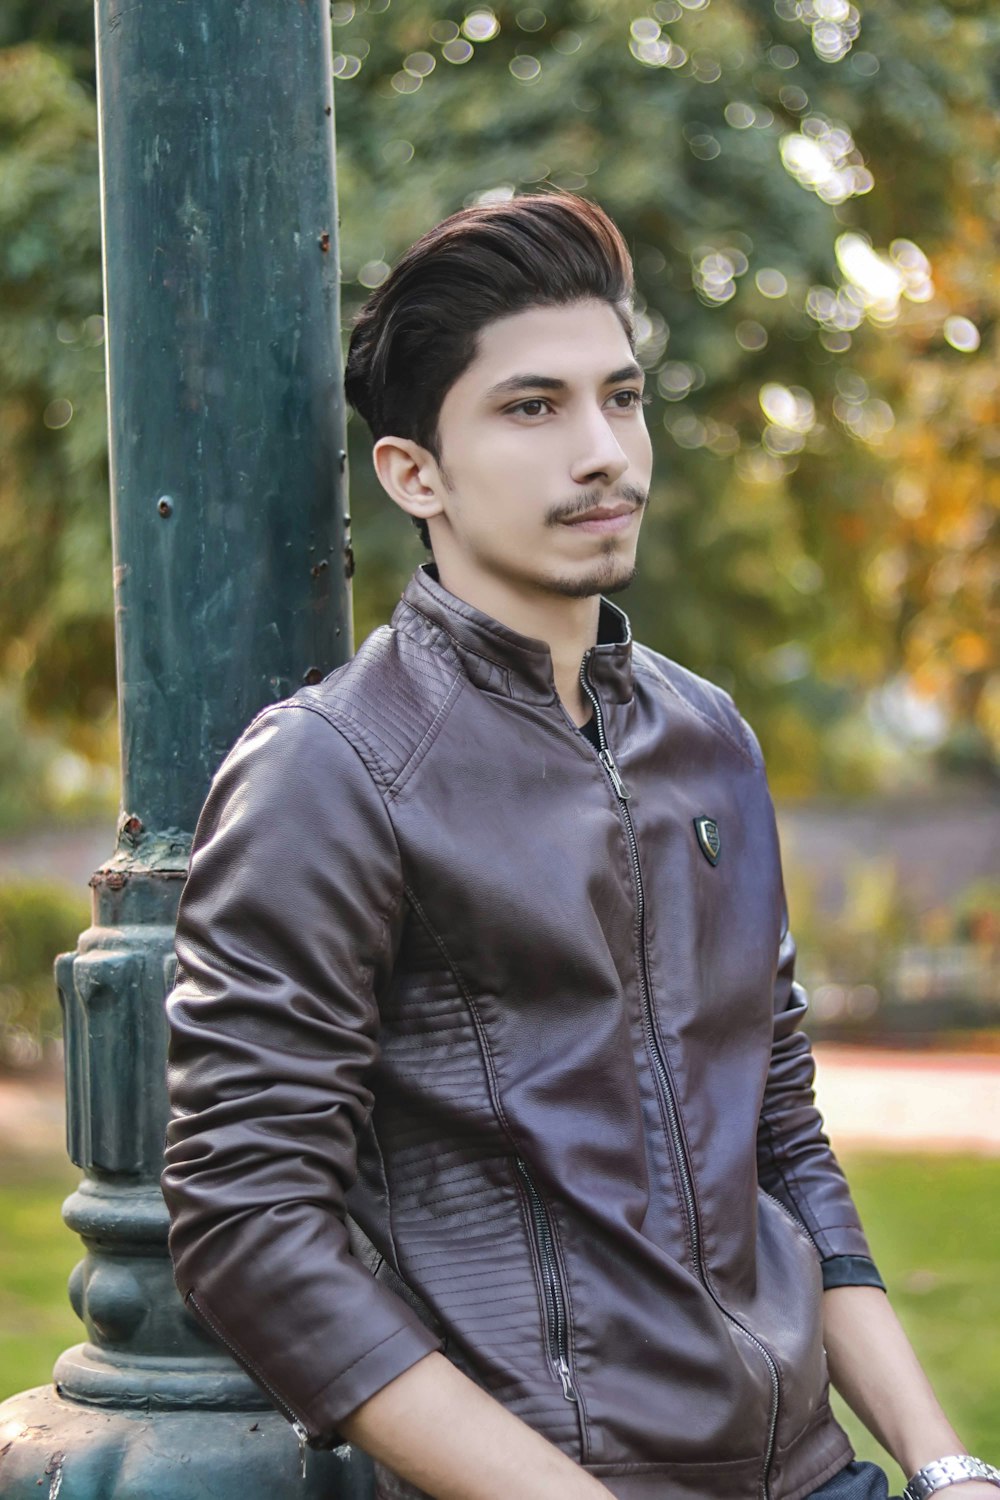 갈색 가죽 집업 재킷을 입고 있는 남자 선택적 초점 사진